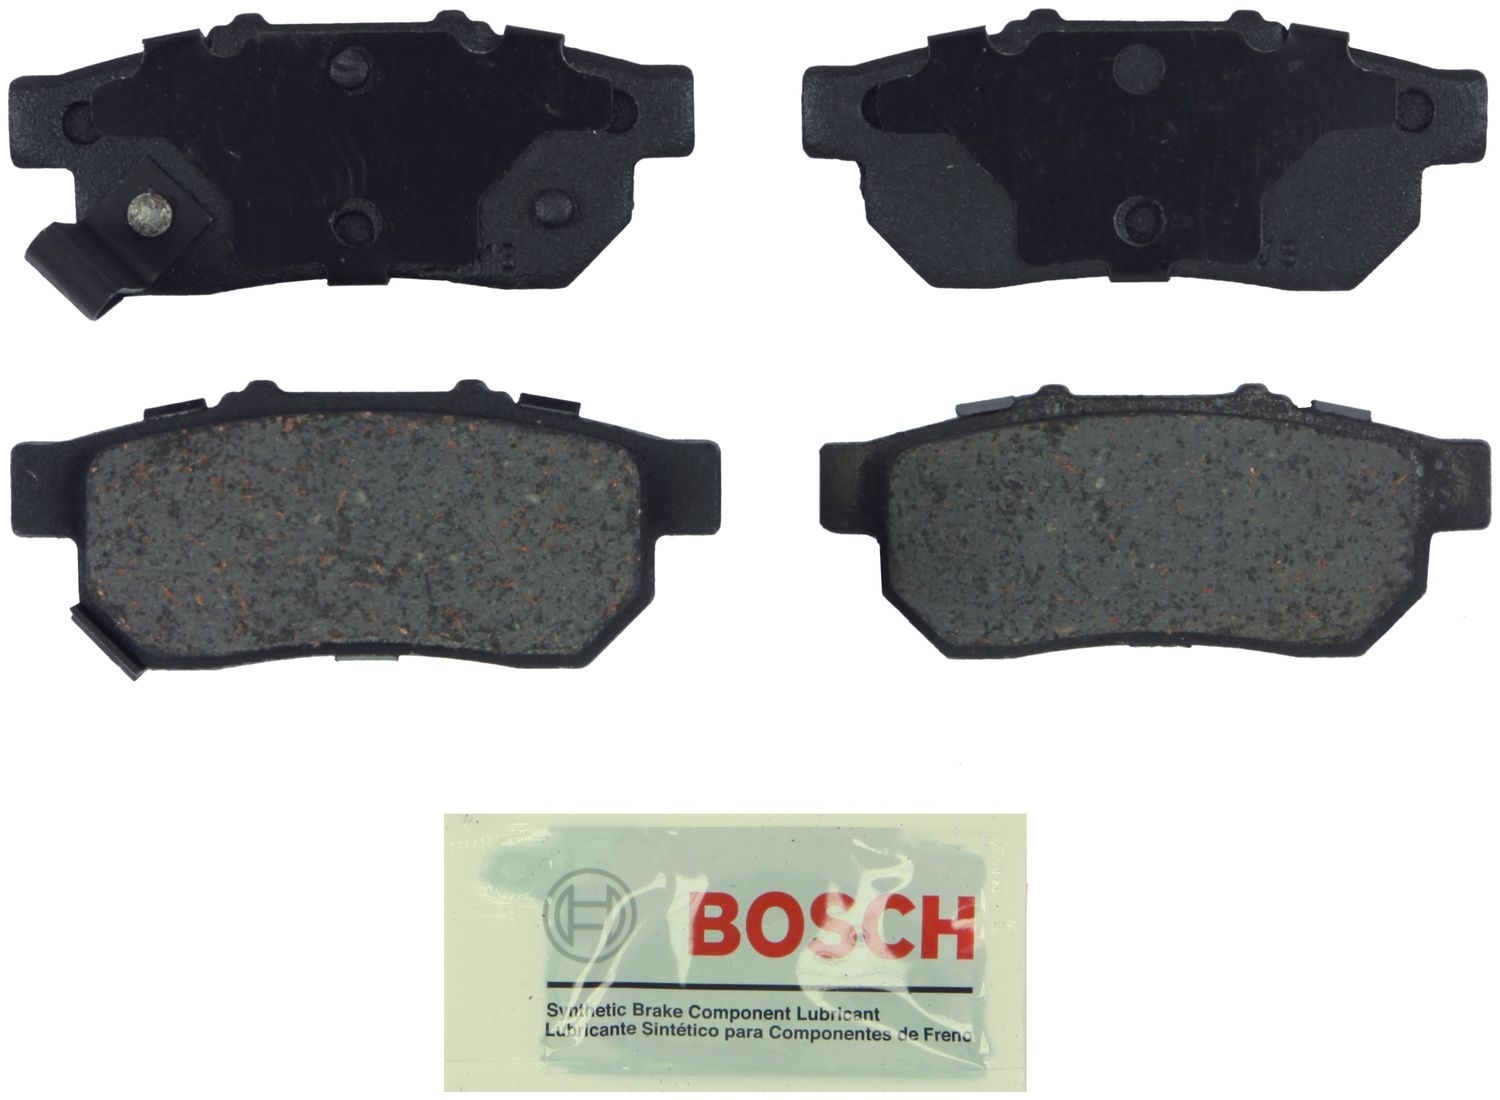 BOSCH BRAKE - Bosch Blue Ceramic Brake Pads - BQC BE564